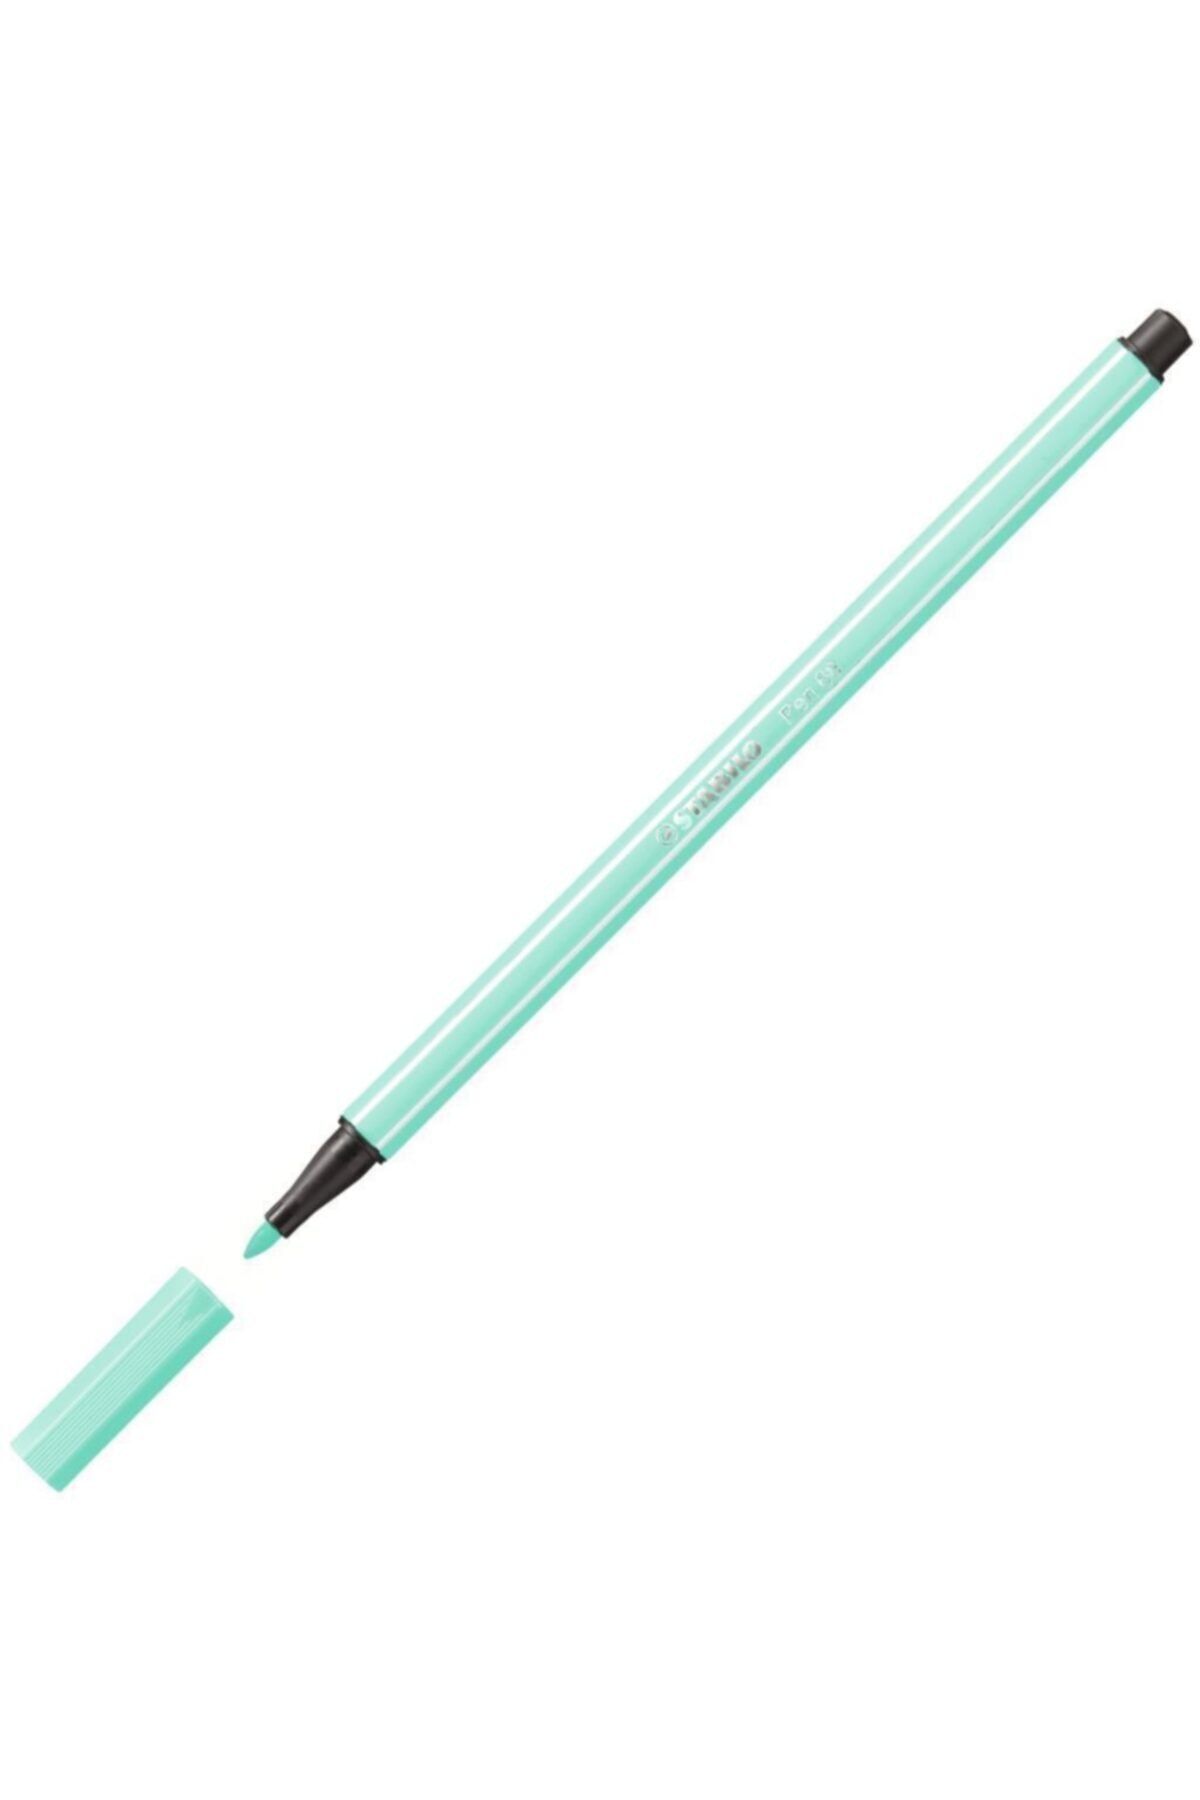 Stabilo Stabılo Pen 68 - Buz Yeşili 68/13 Keçeli Kalem